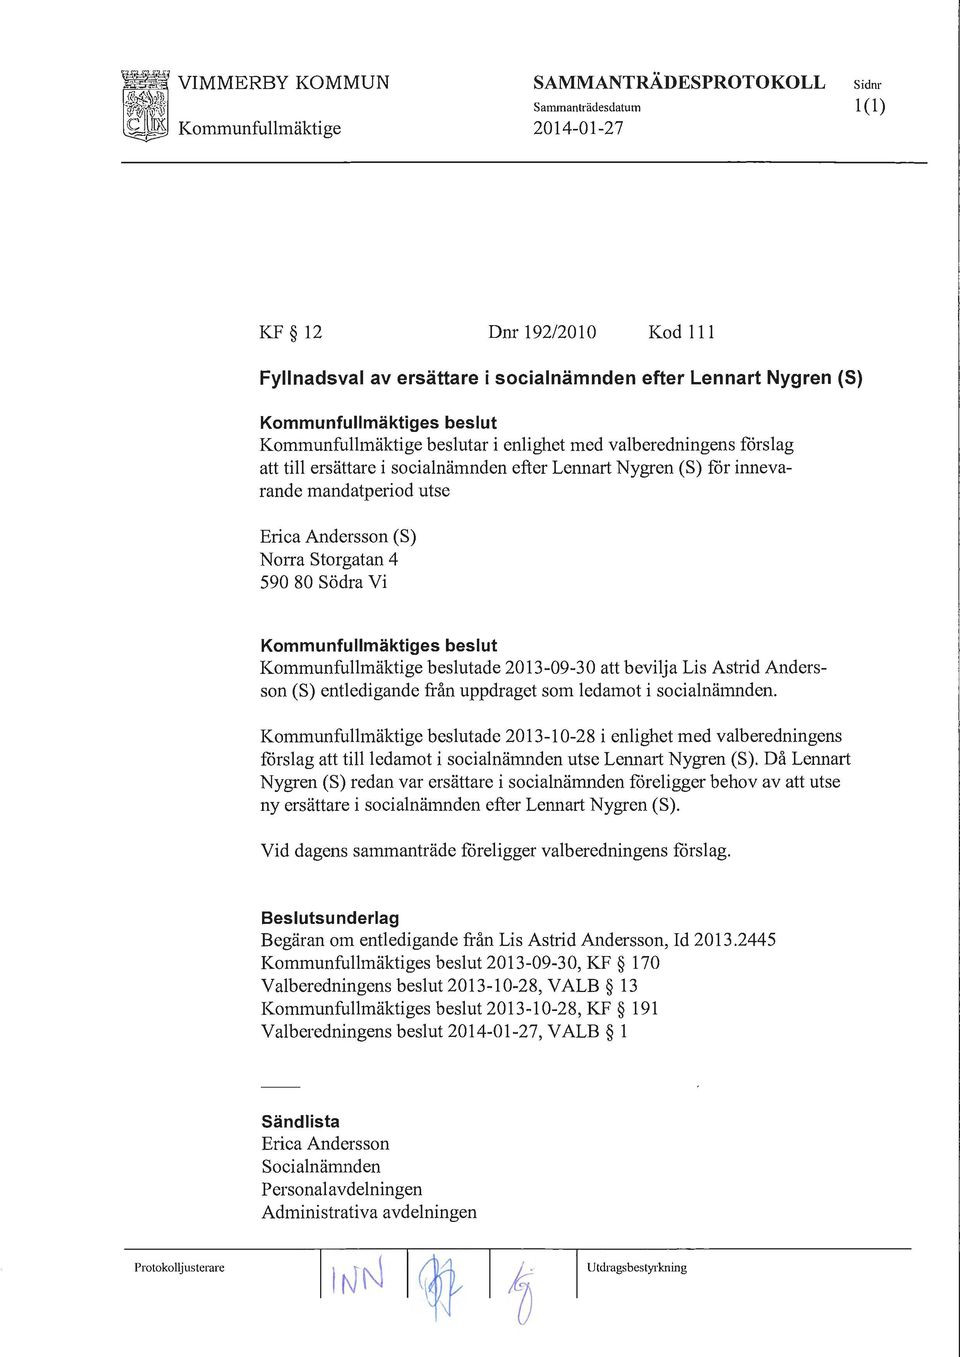 590 80 Södra Vi Kommunfullmäktige beslutade 2013-09-30 att bevilja Lis Astrid Andersson (S) entledigande från uppdraget som ledamot i socialnämnden.